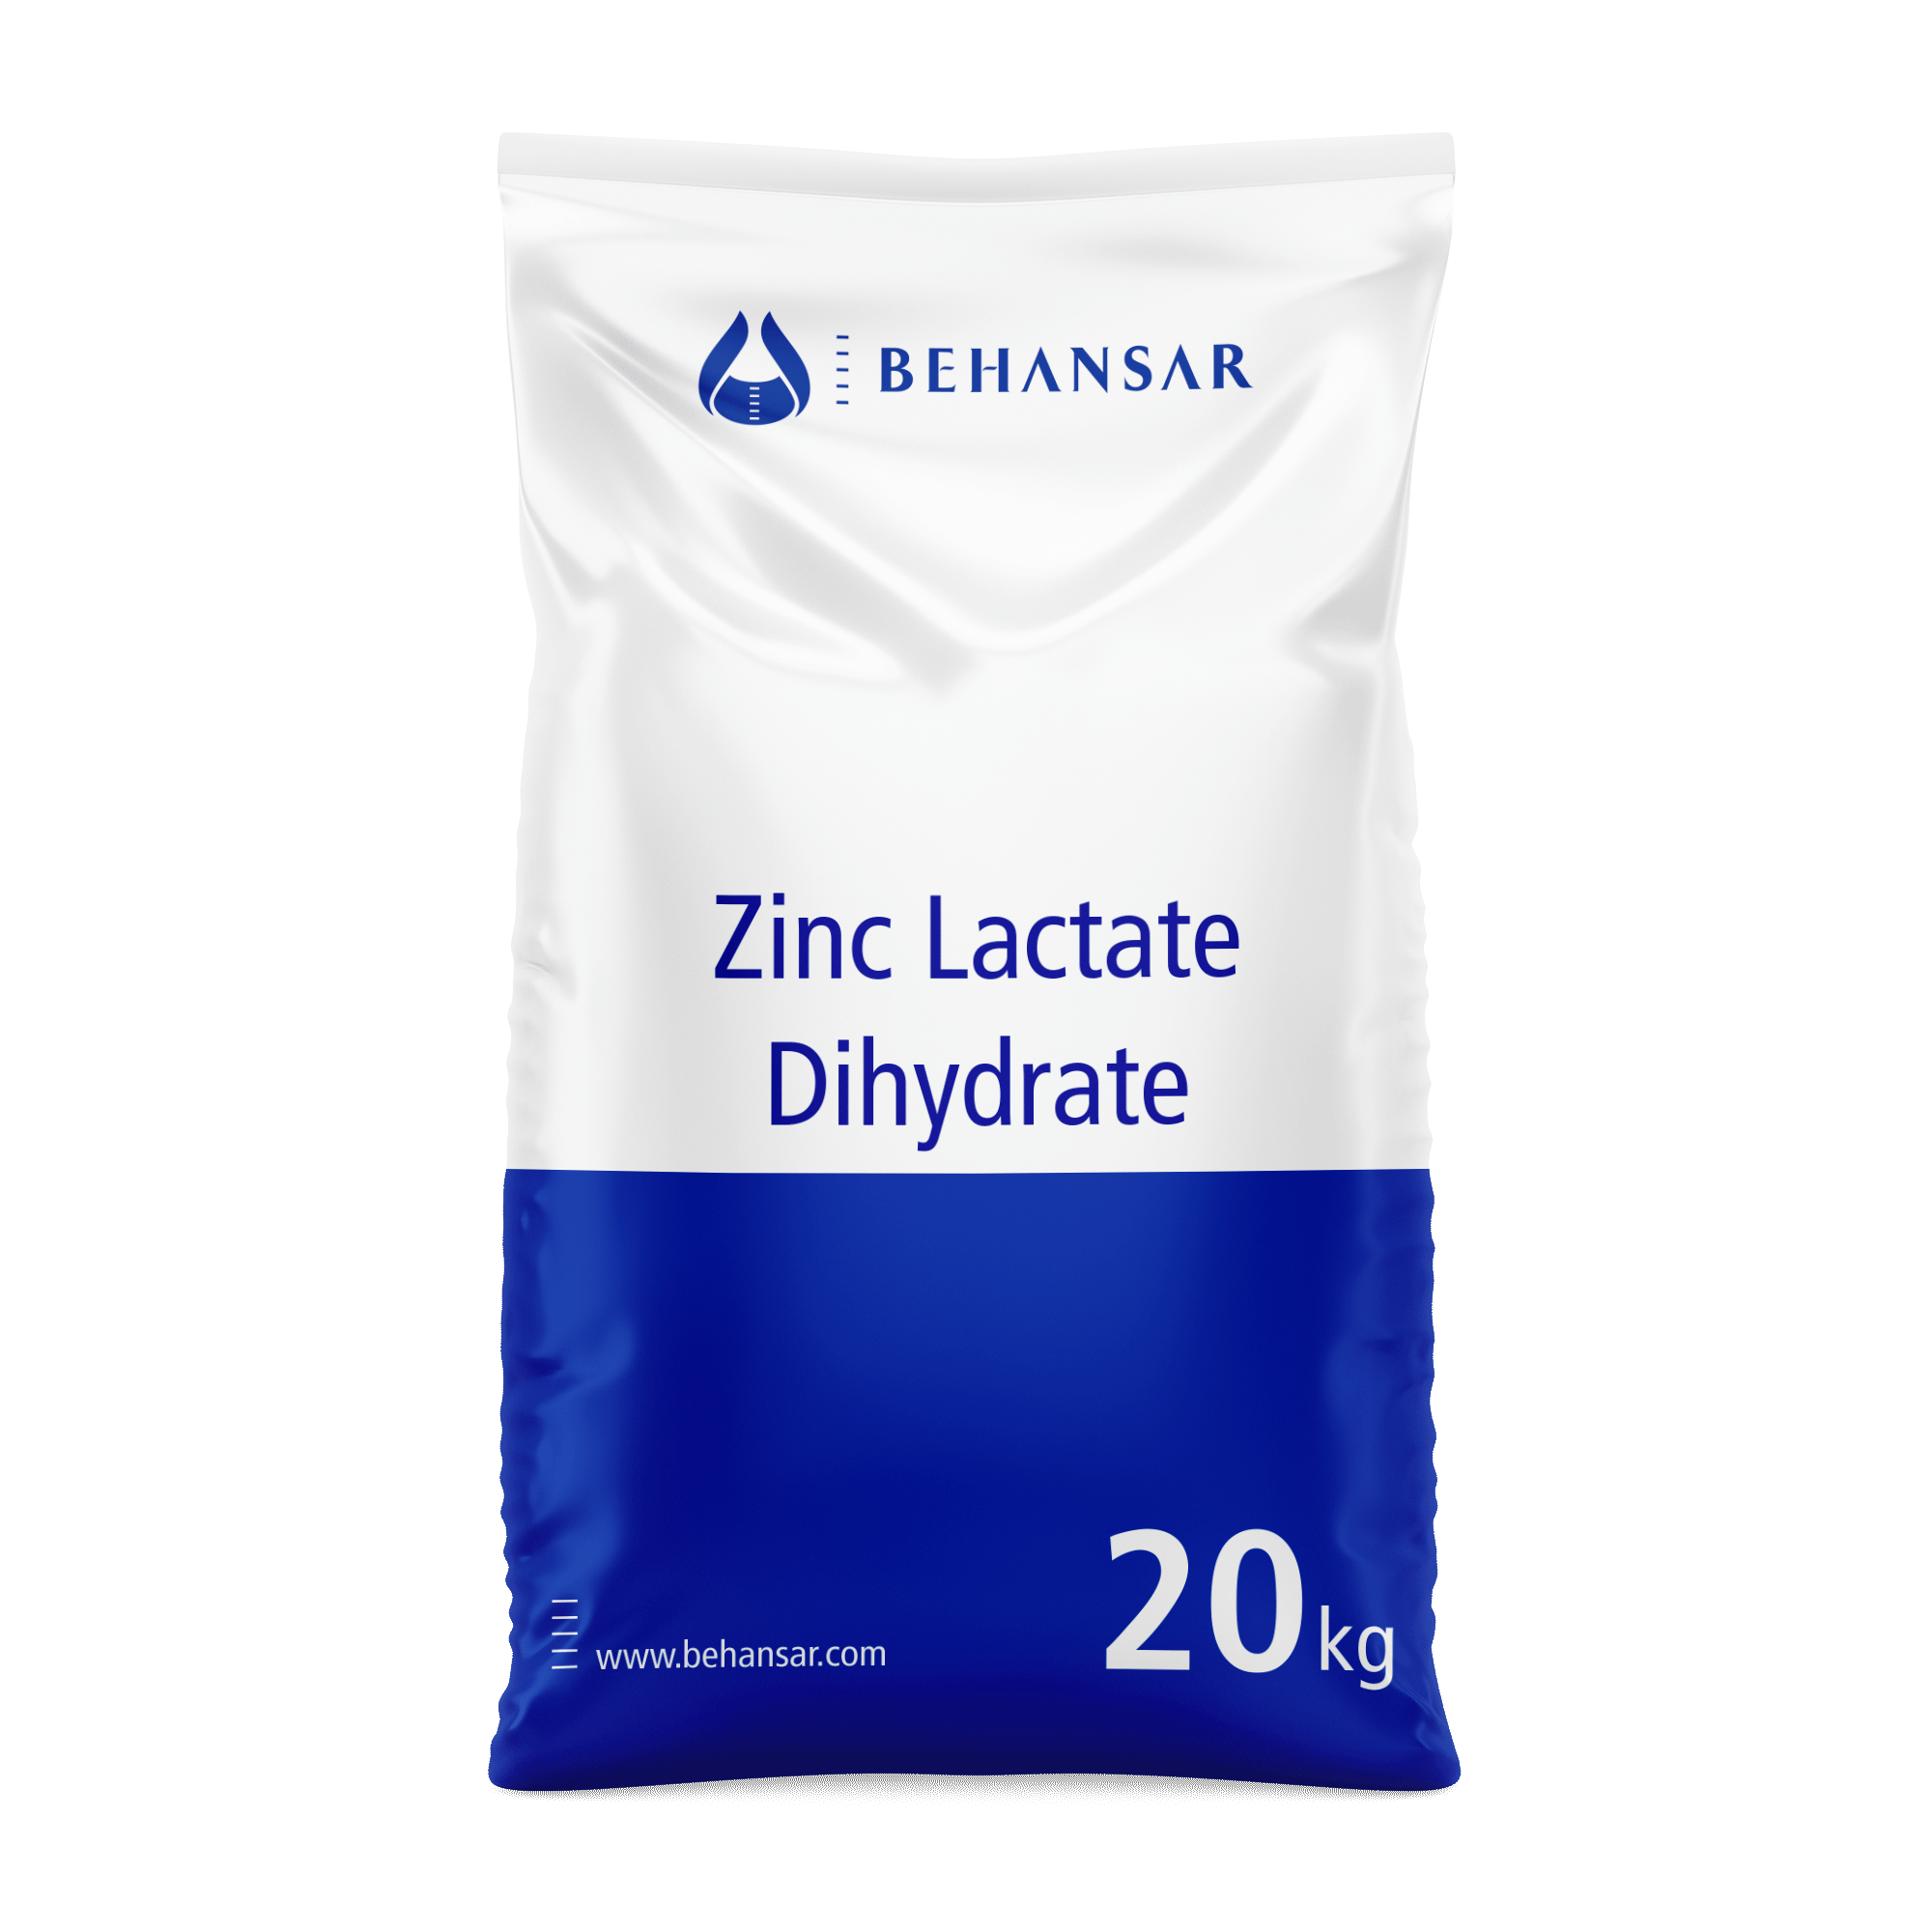 زینک لاکتات دی هیدرات یکی از تولیدات شرکت بهانسار است